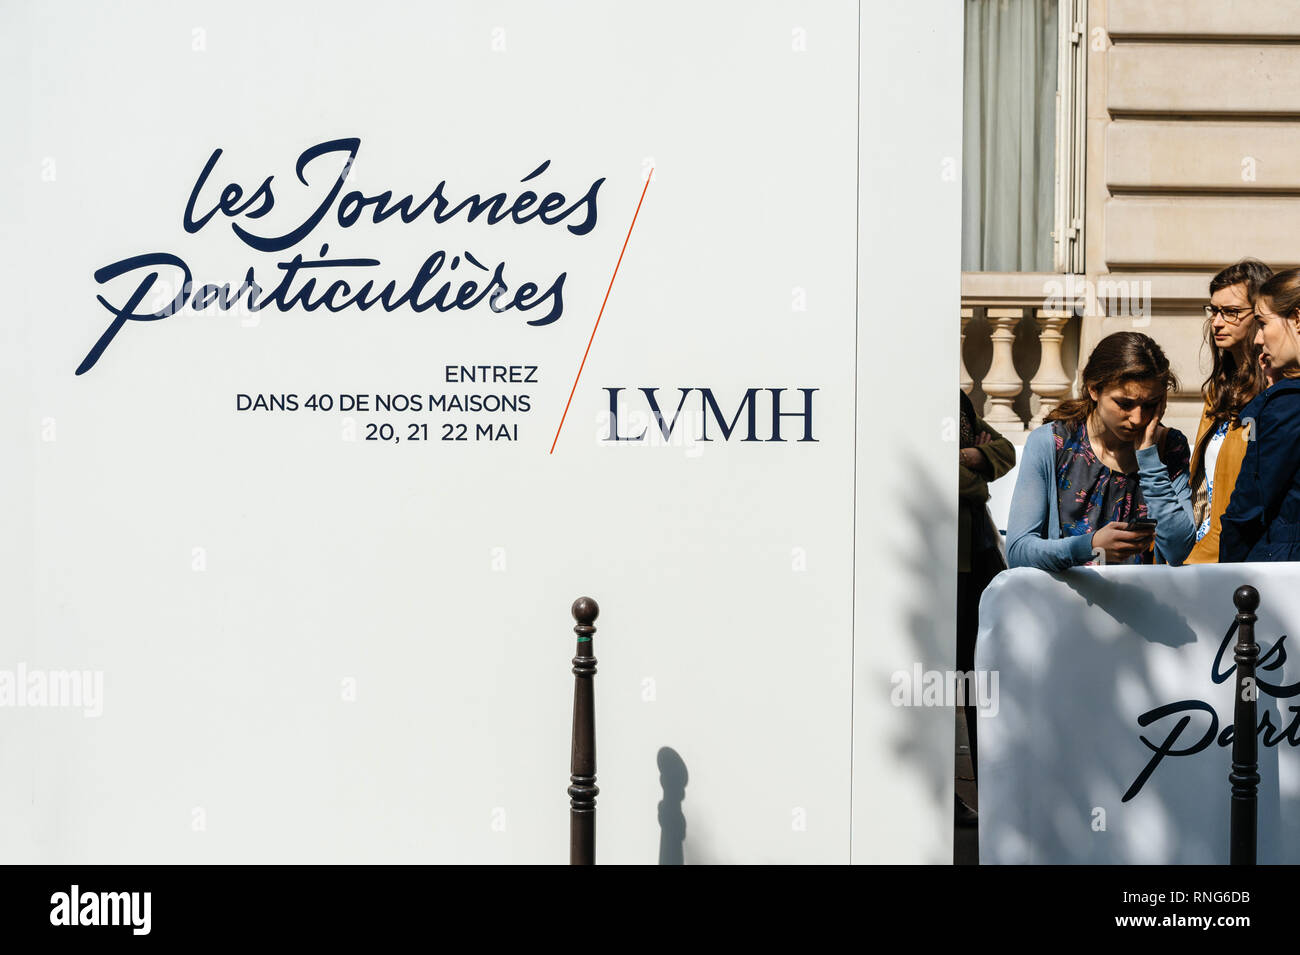 París, Francia - 21 de mayo de 2016: la gente en cola Les Journees